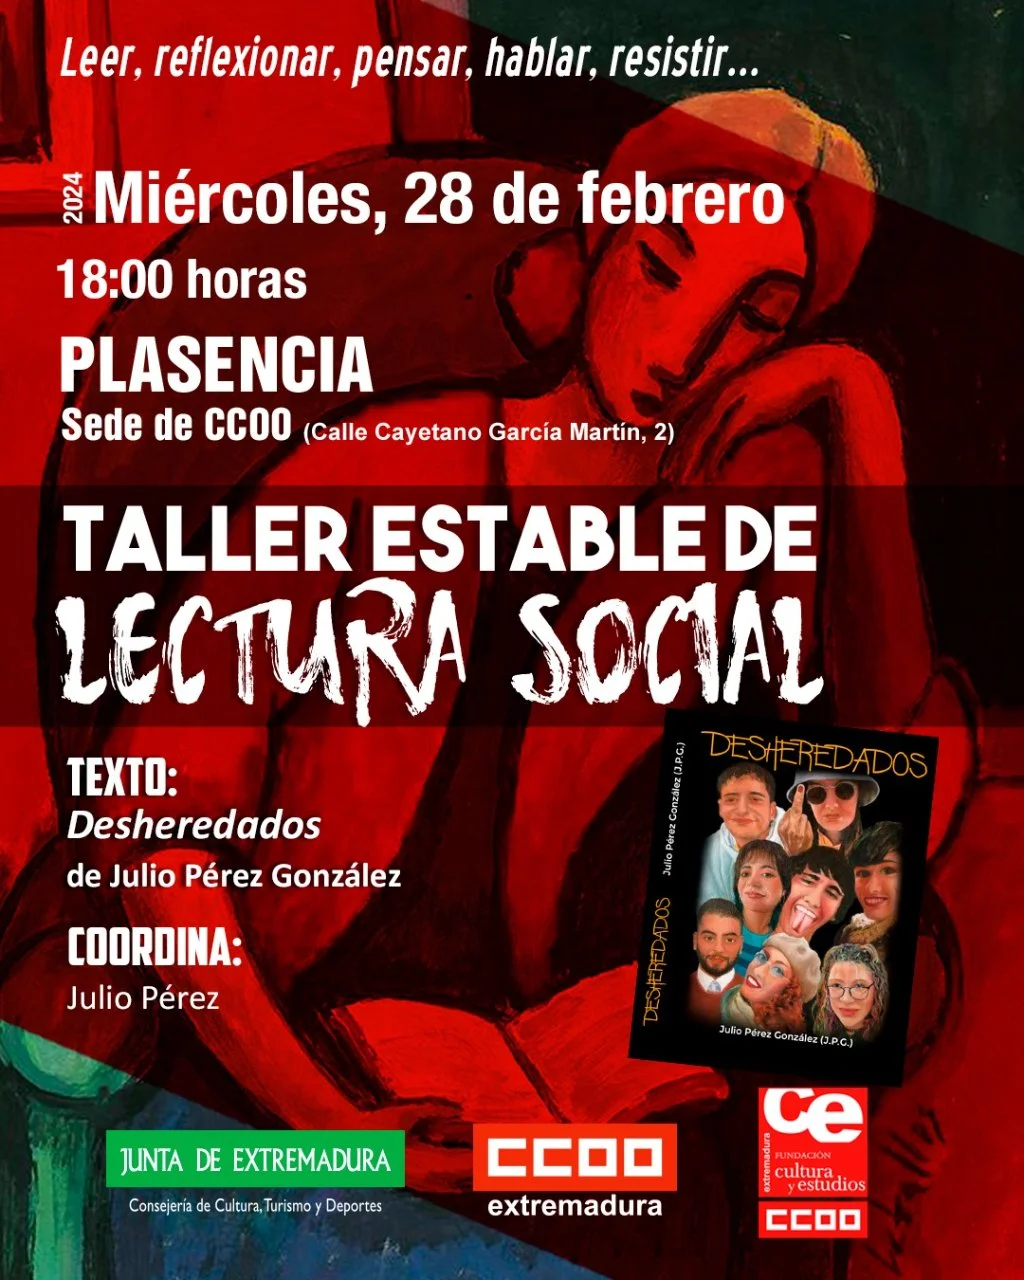 Taller de Lectura Social sobre Desheredados de Julio Pérez en Plasencia